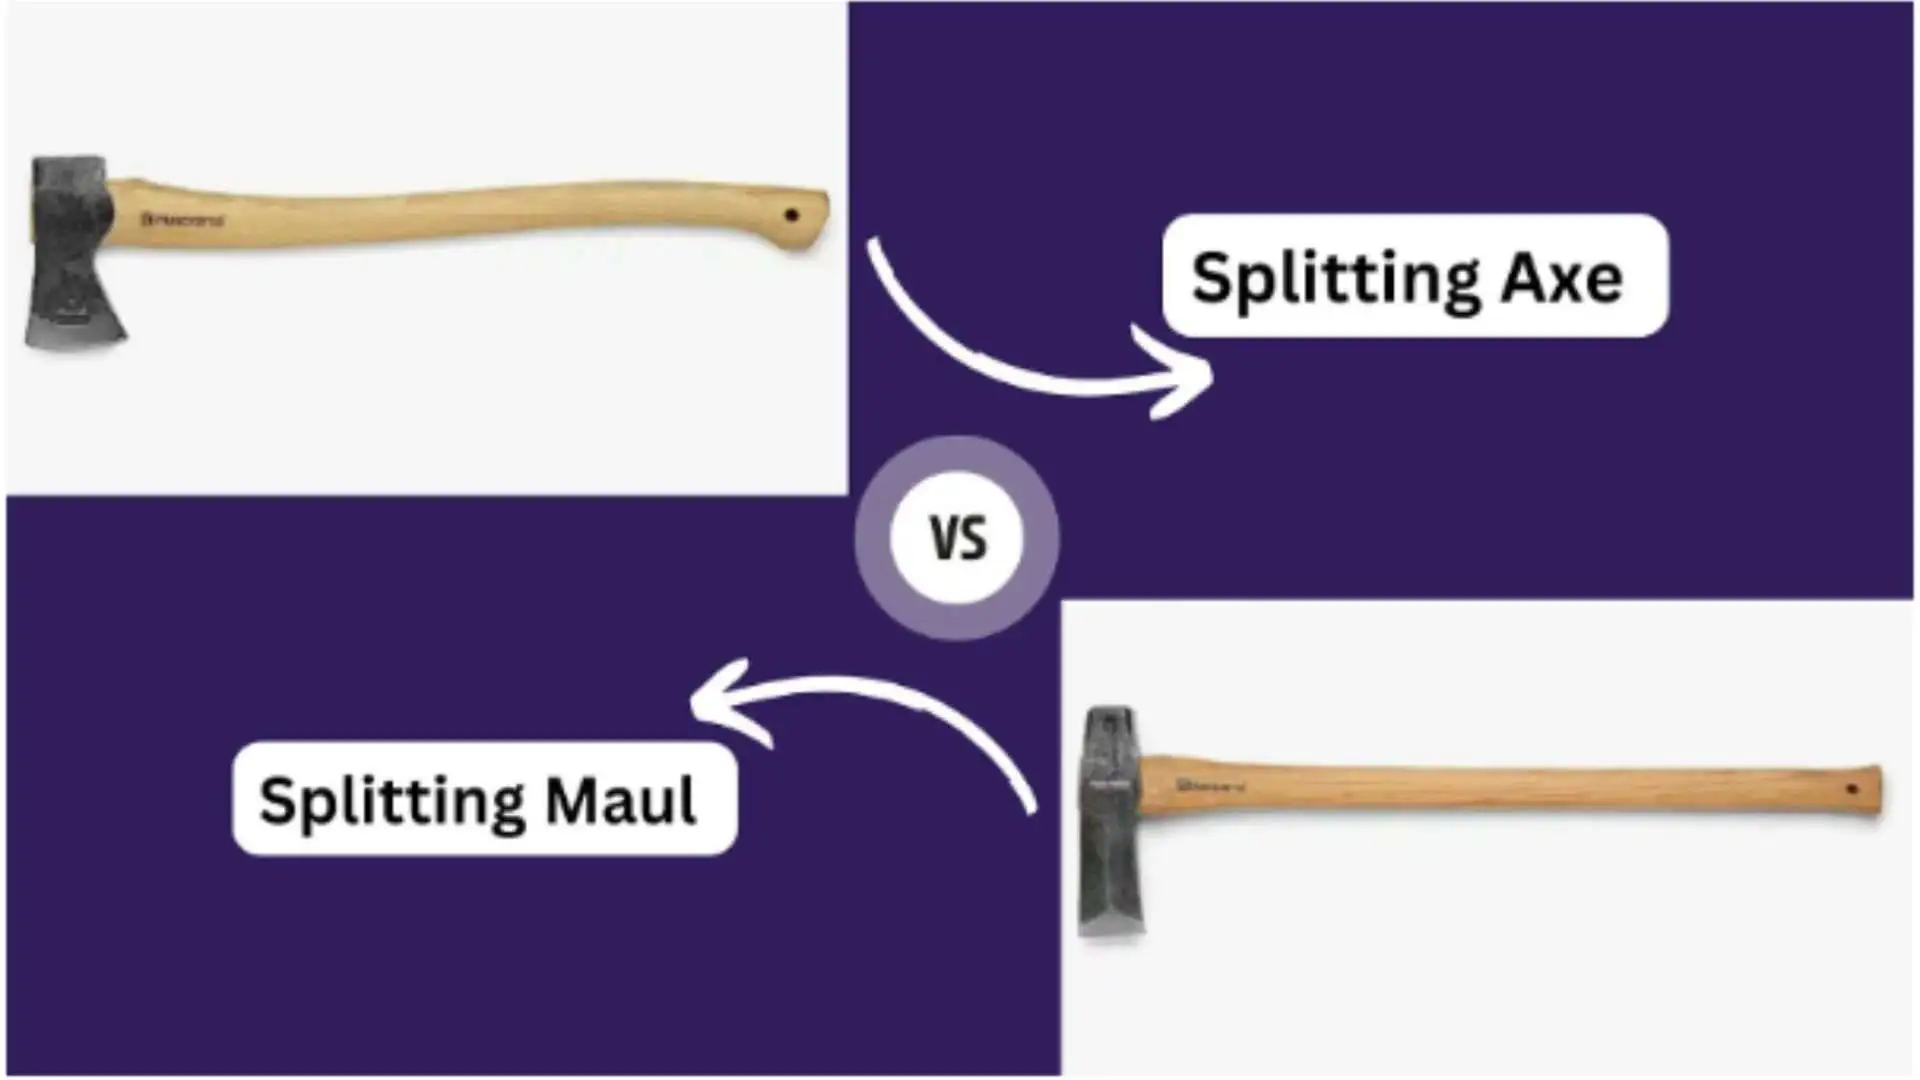 Splitting Axe vs Maul